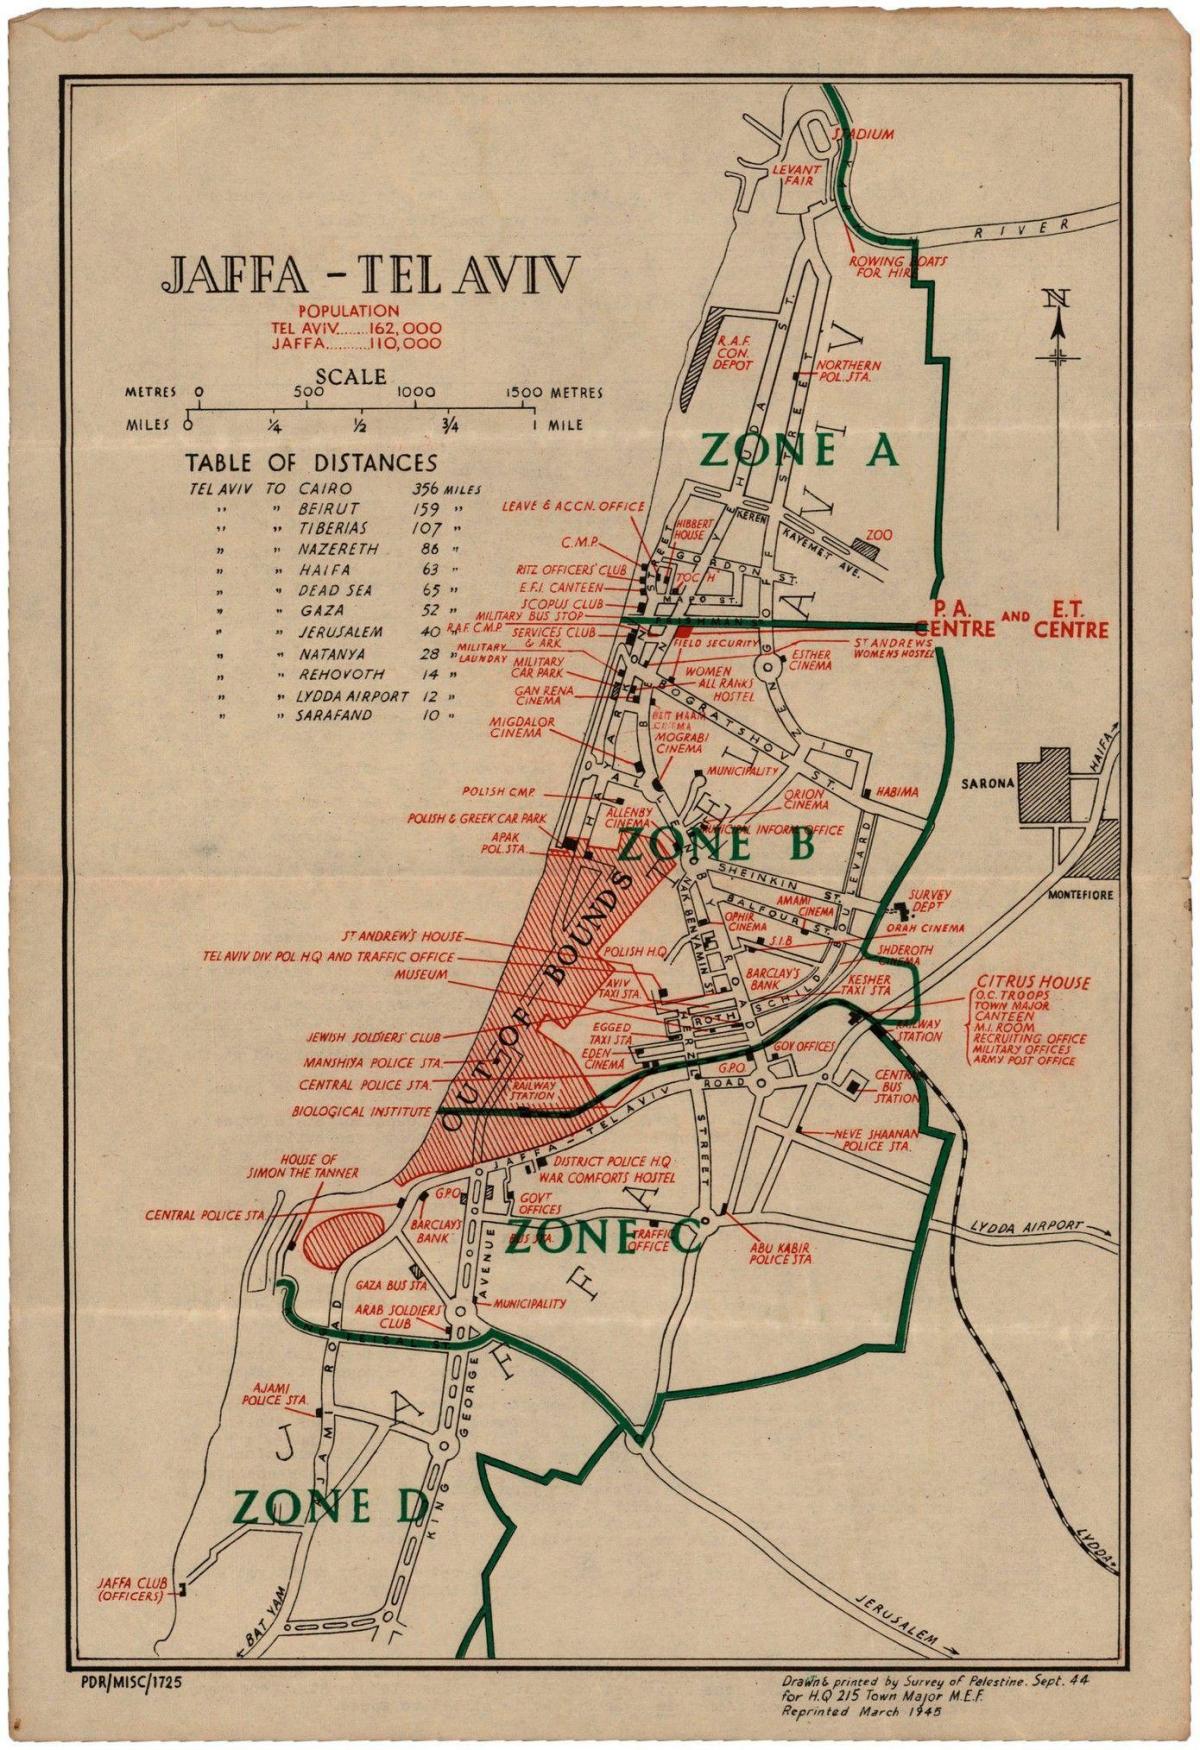 Tel Aviv historische kaart